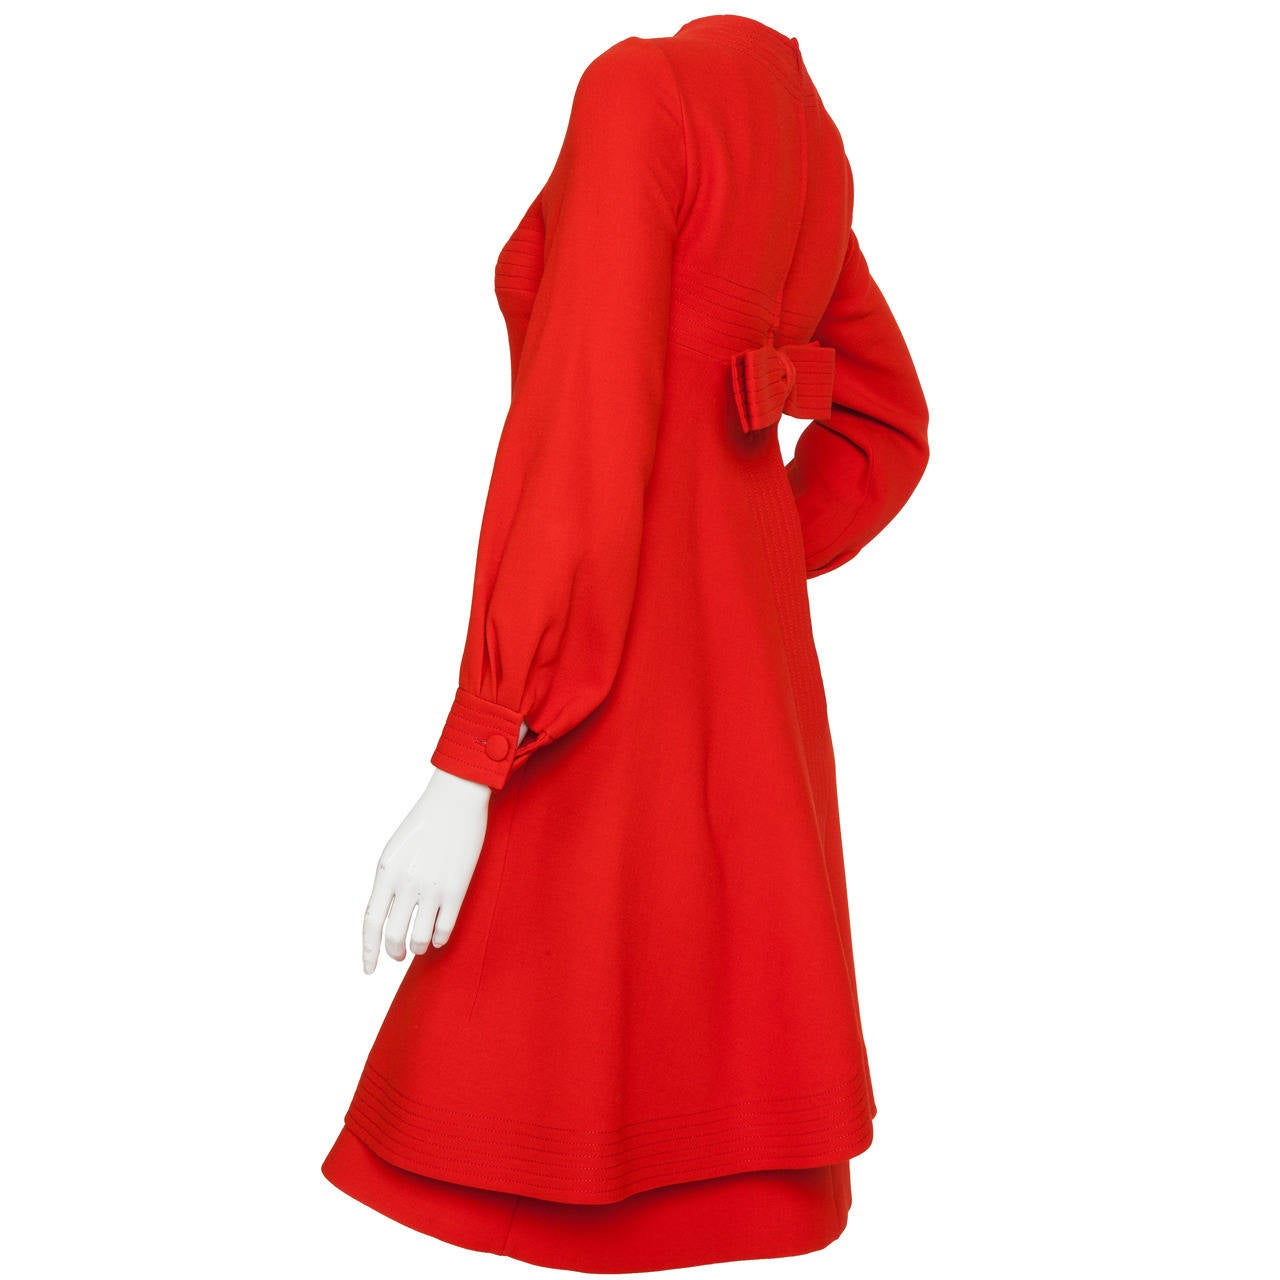 Robe à manches longues en laine rouge tomate Pierre Cardin, datant d'environ 1970, avec motif de couture en canal. La surrobe A-line présente une fente centrale de 8 pouces juste au-dessus de l'ourlet, des poches décoratives frontales en fausse